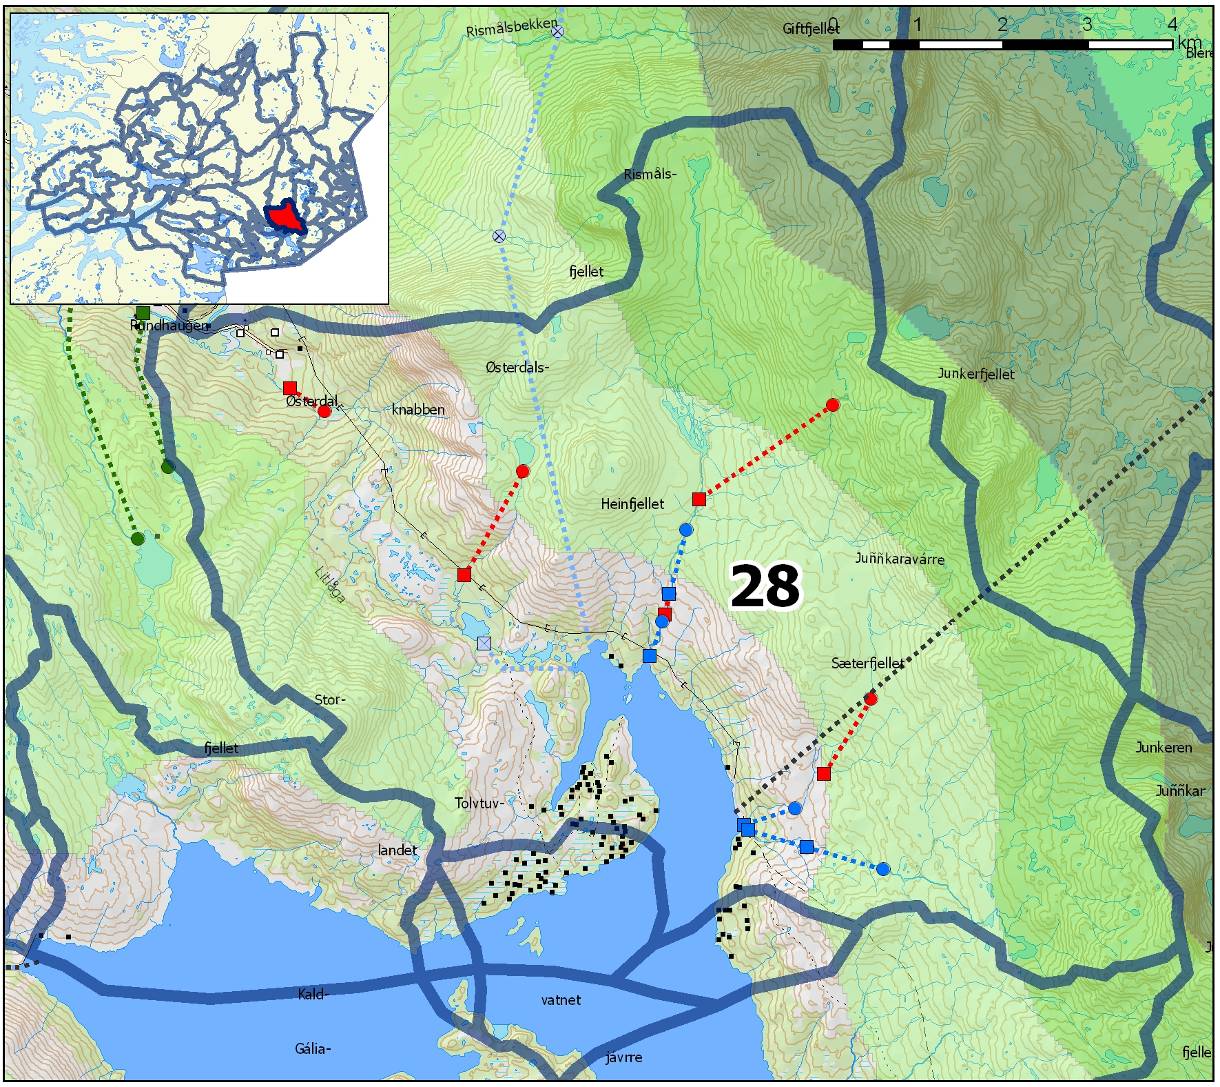 Delfelt nr: 28 Navn: Heinbergelva og Grønnfjellåga (øvre del) Regine: 156.DC og 156.BC6Z Kartutsnitt delfelt Planstatus Kommuneplan: Stort sett LNF-sone 1 hvor spredt bebyggelse ikke tillates.